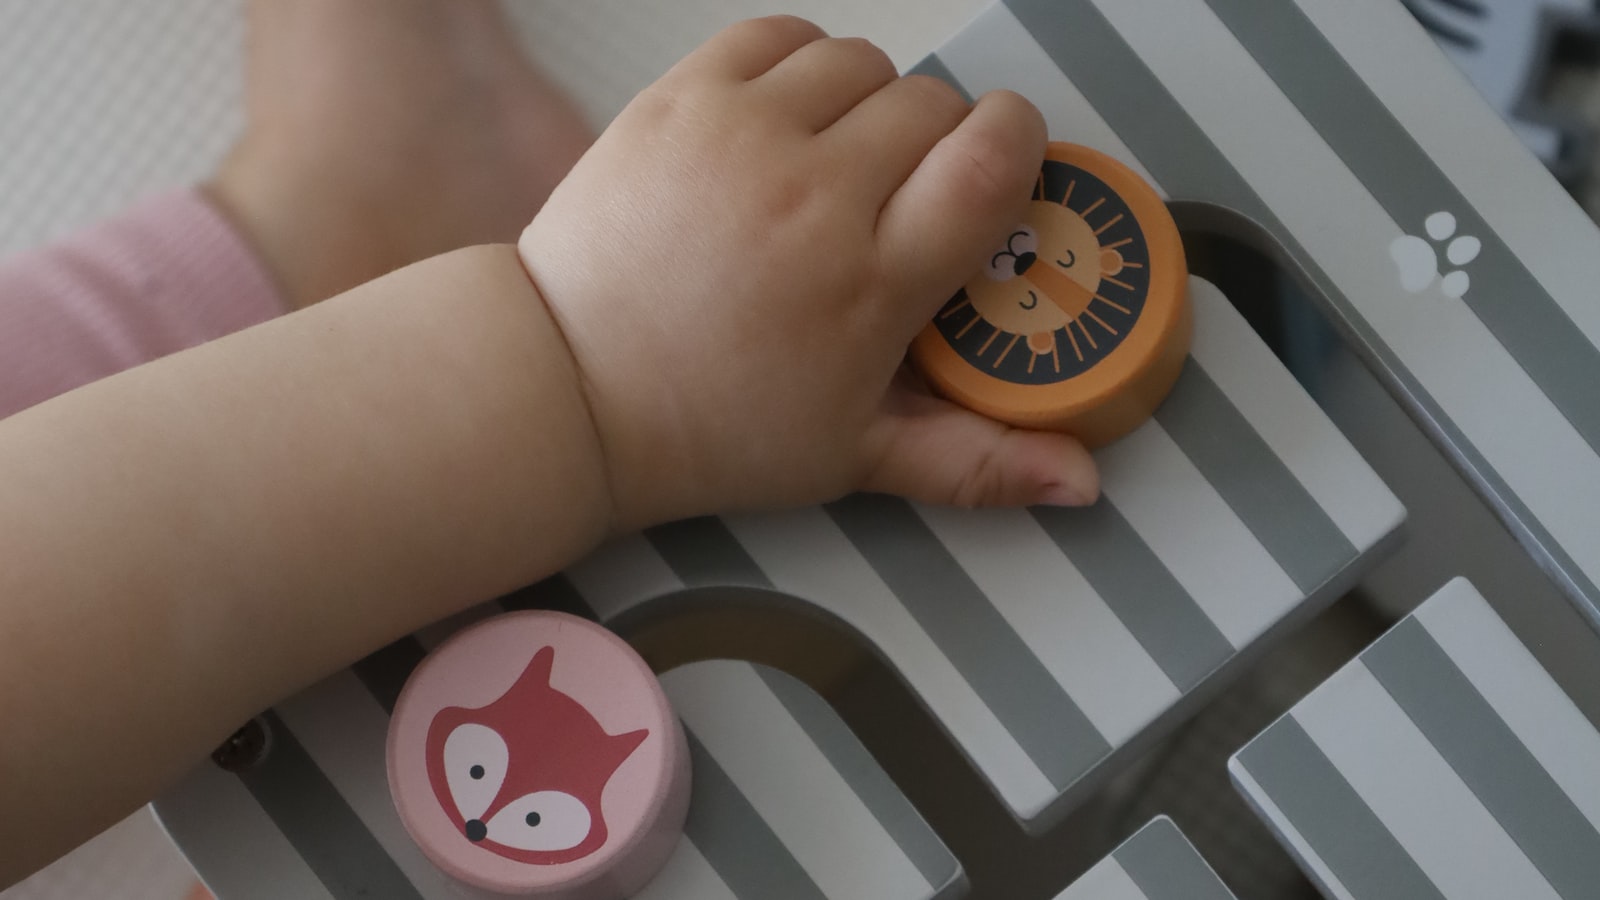 Bezpieczne​ zabawki dla niemowląt:‌ Jak znaleźć produkty najwyższej jakości?